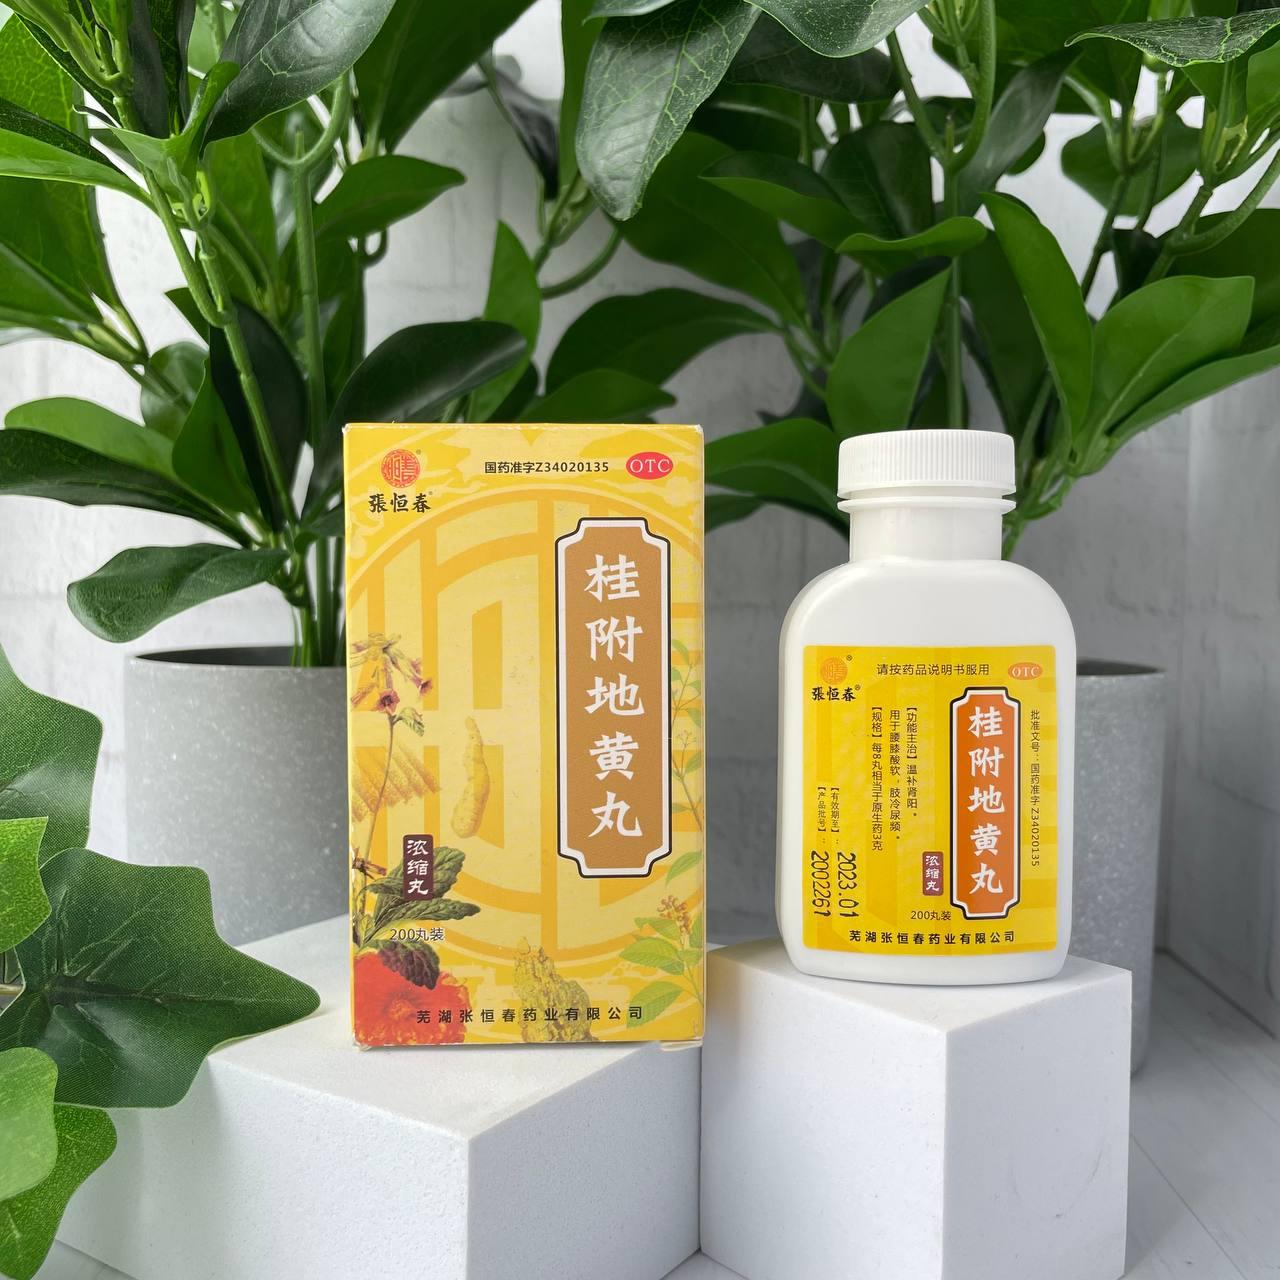 Пилюли "Золотой ларец" для укрепления мочеполовой системы Guifu Dihuang Wan